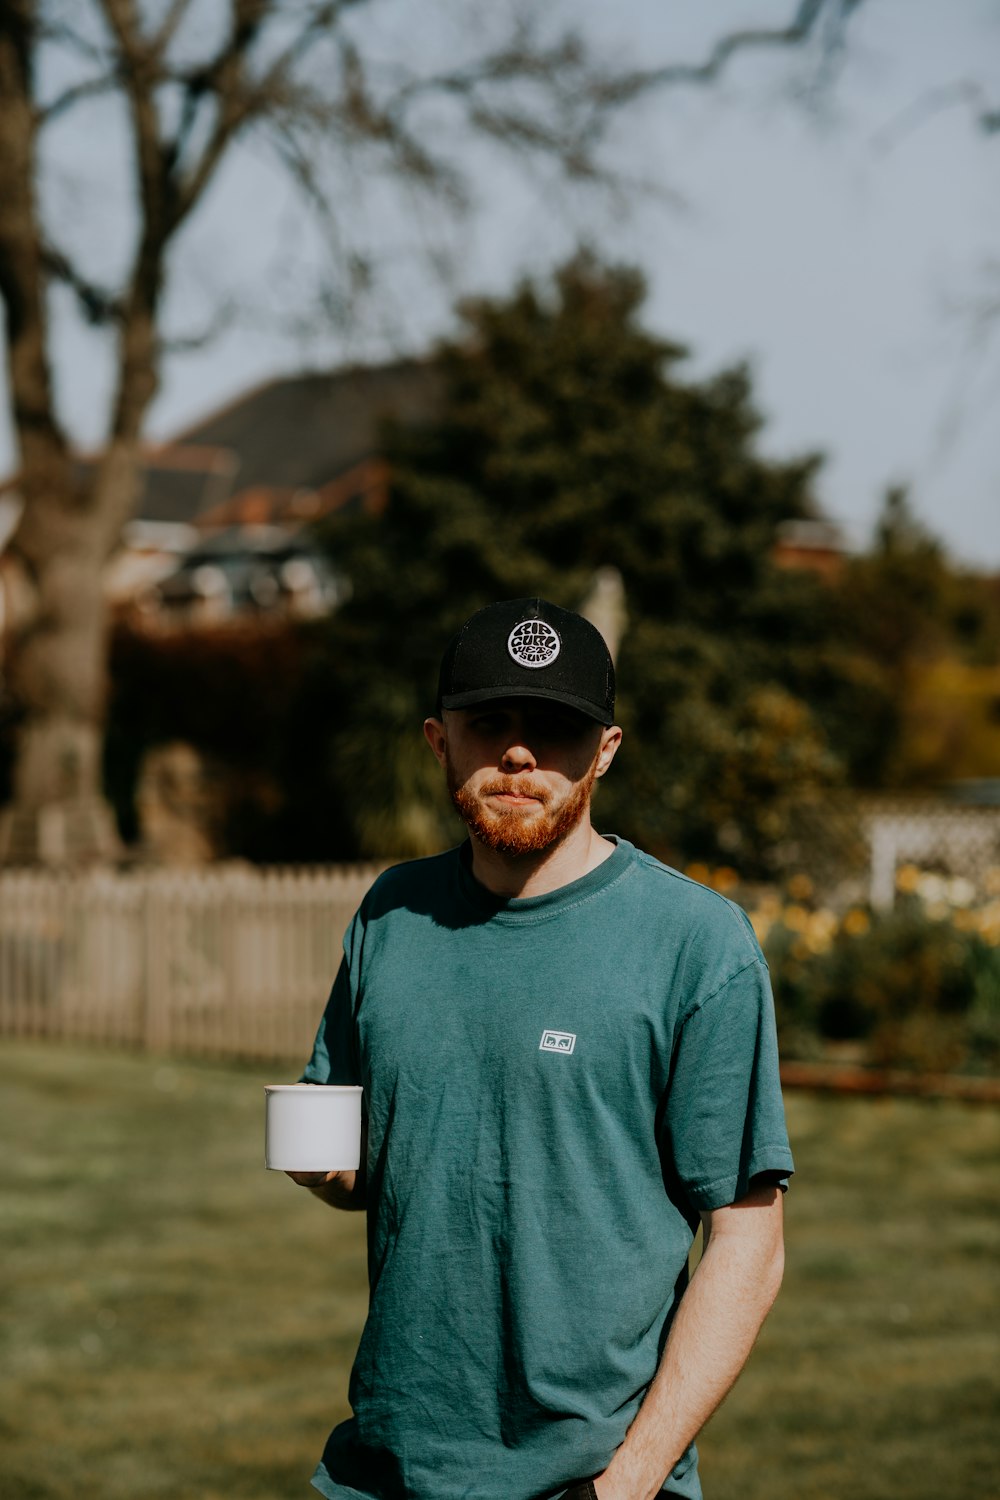 Un homme debout dans une cour tenant une tasse de café